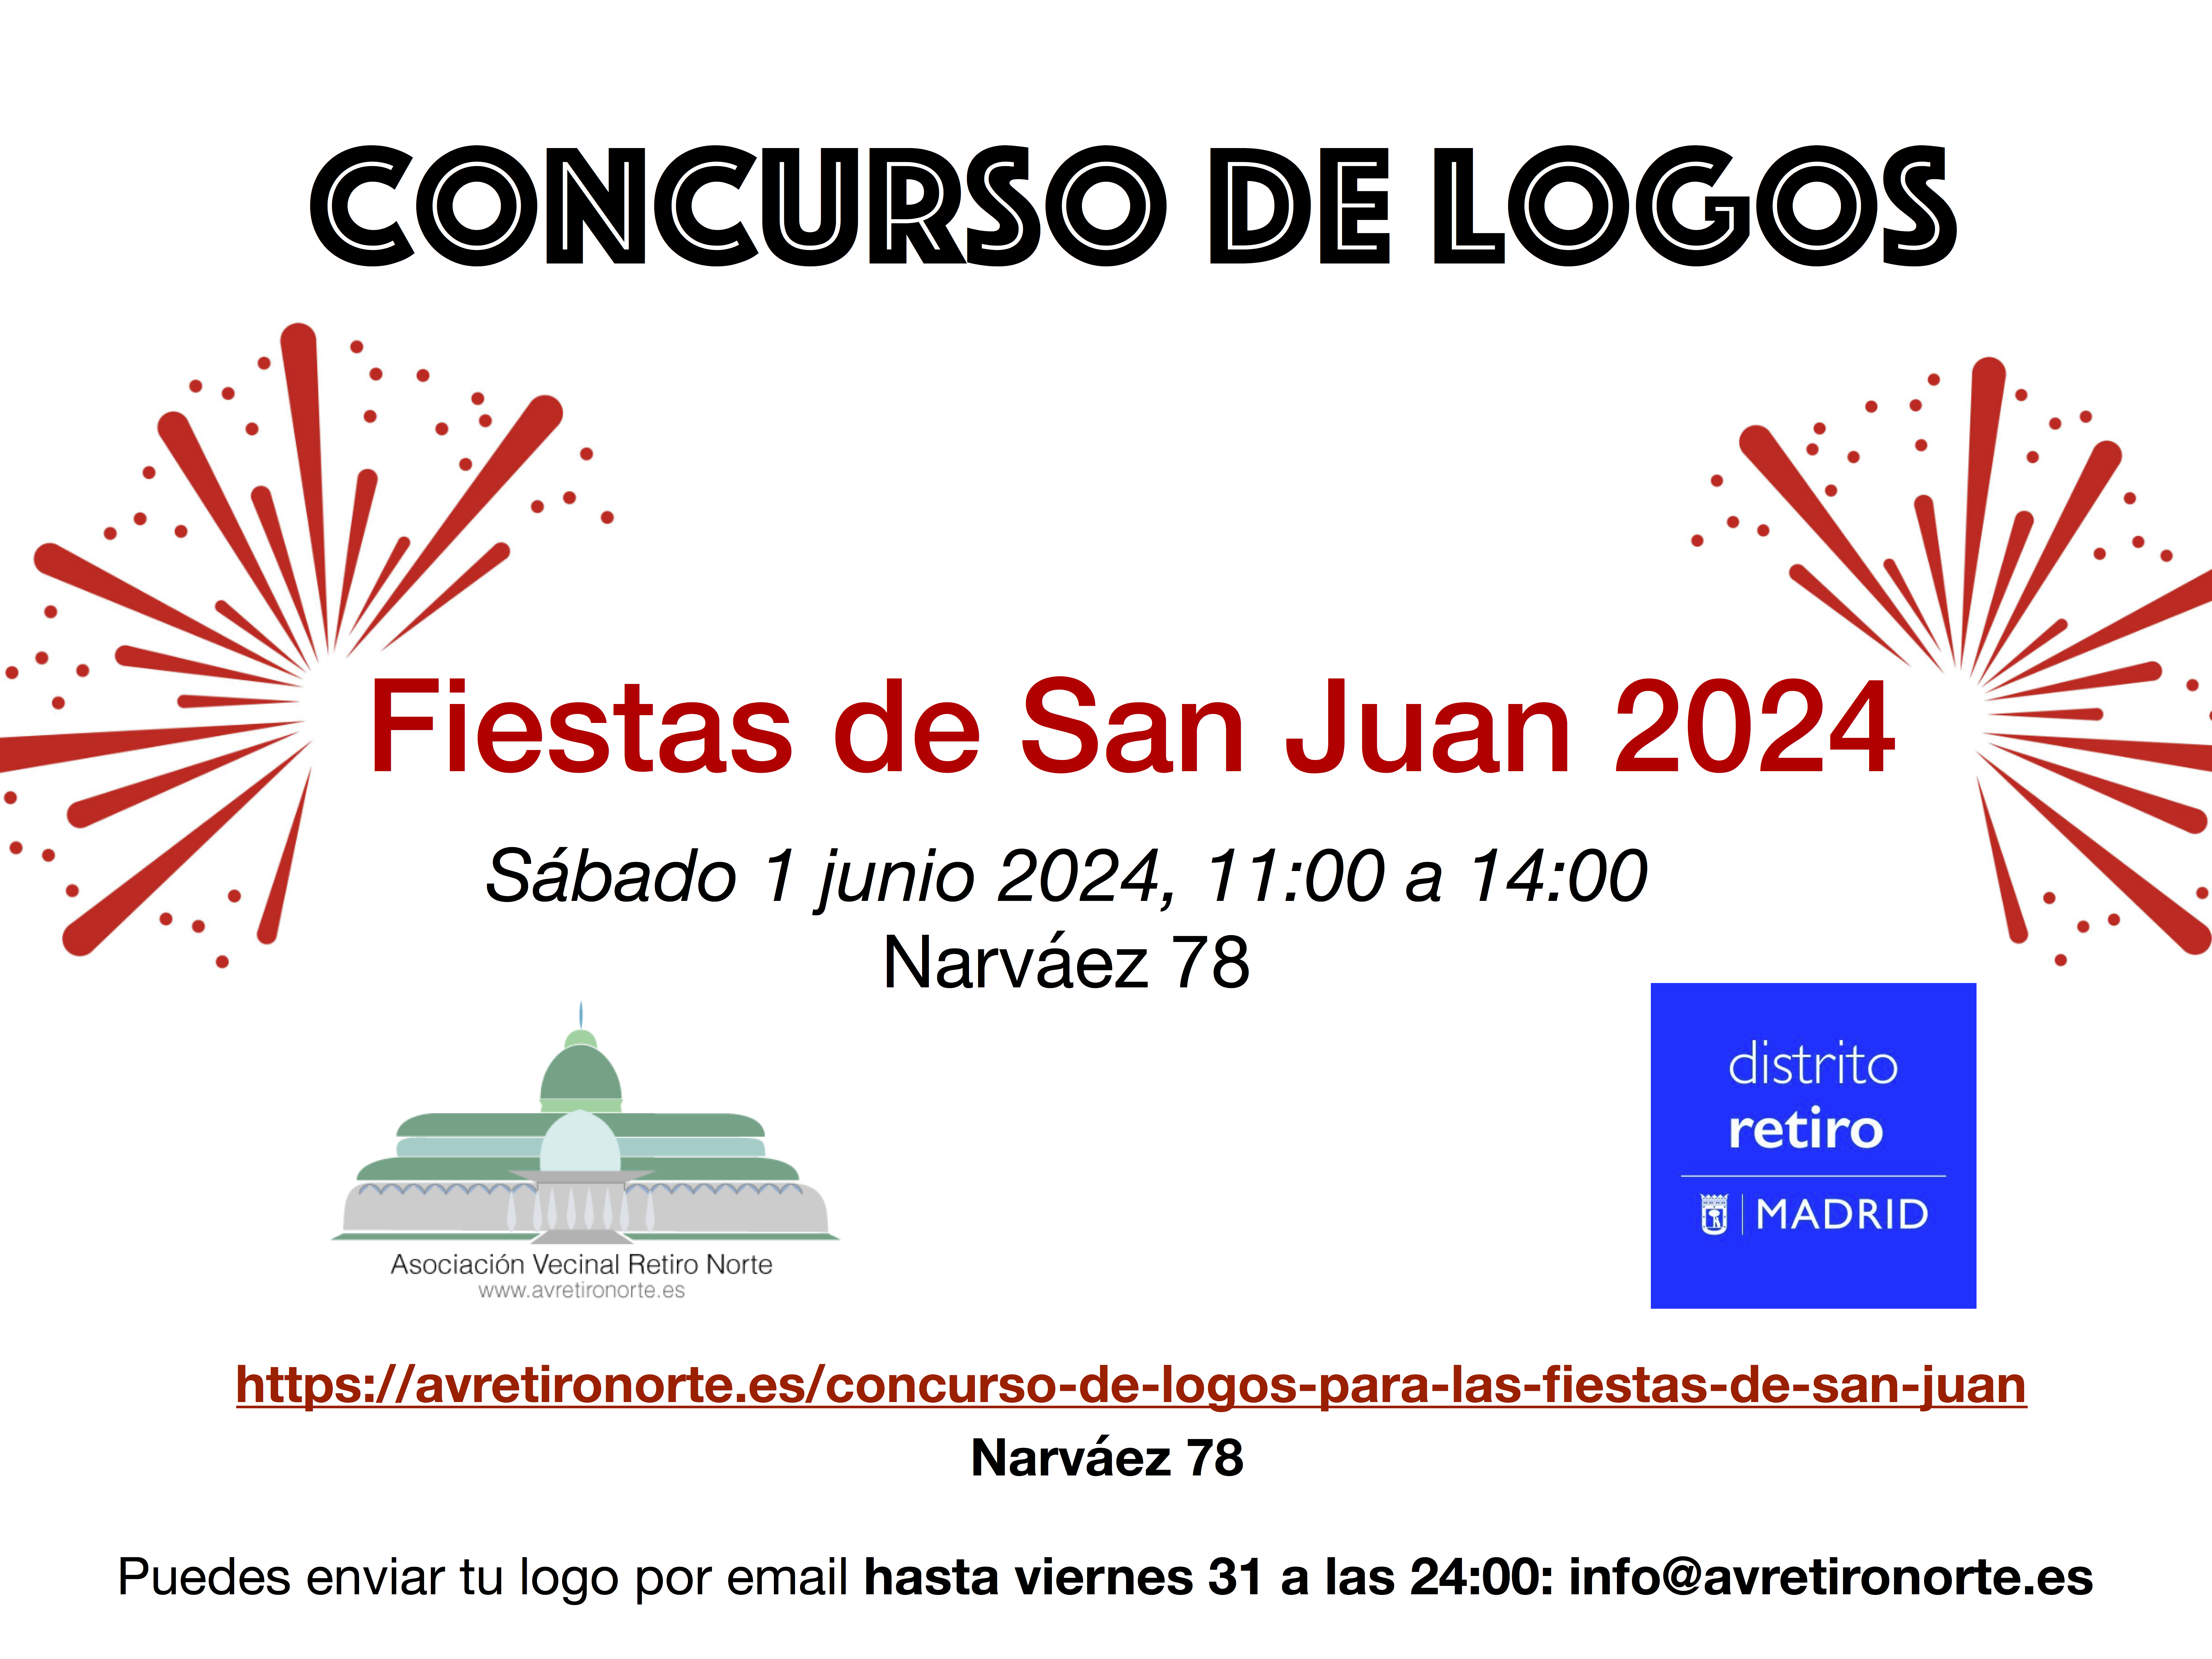 Concurso de logos para las Fiestas de San Juan